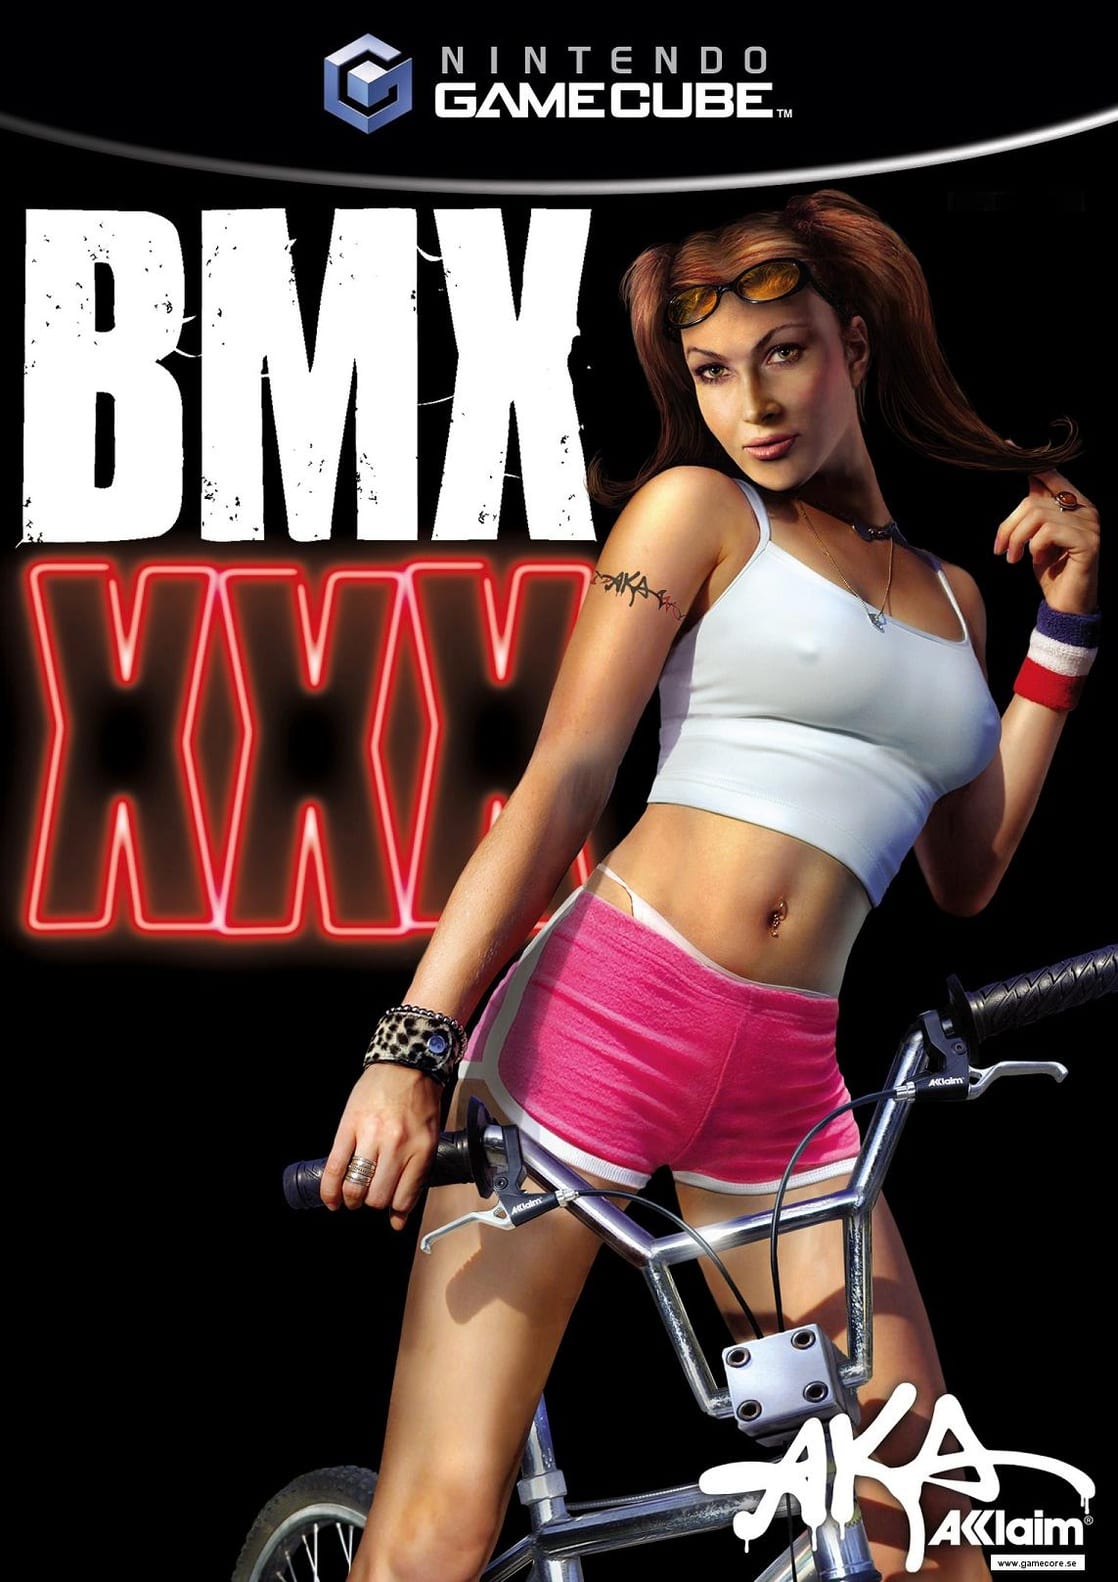 BMX XXX 